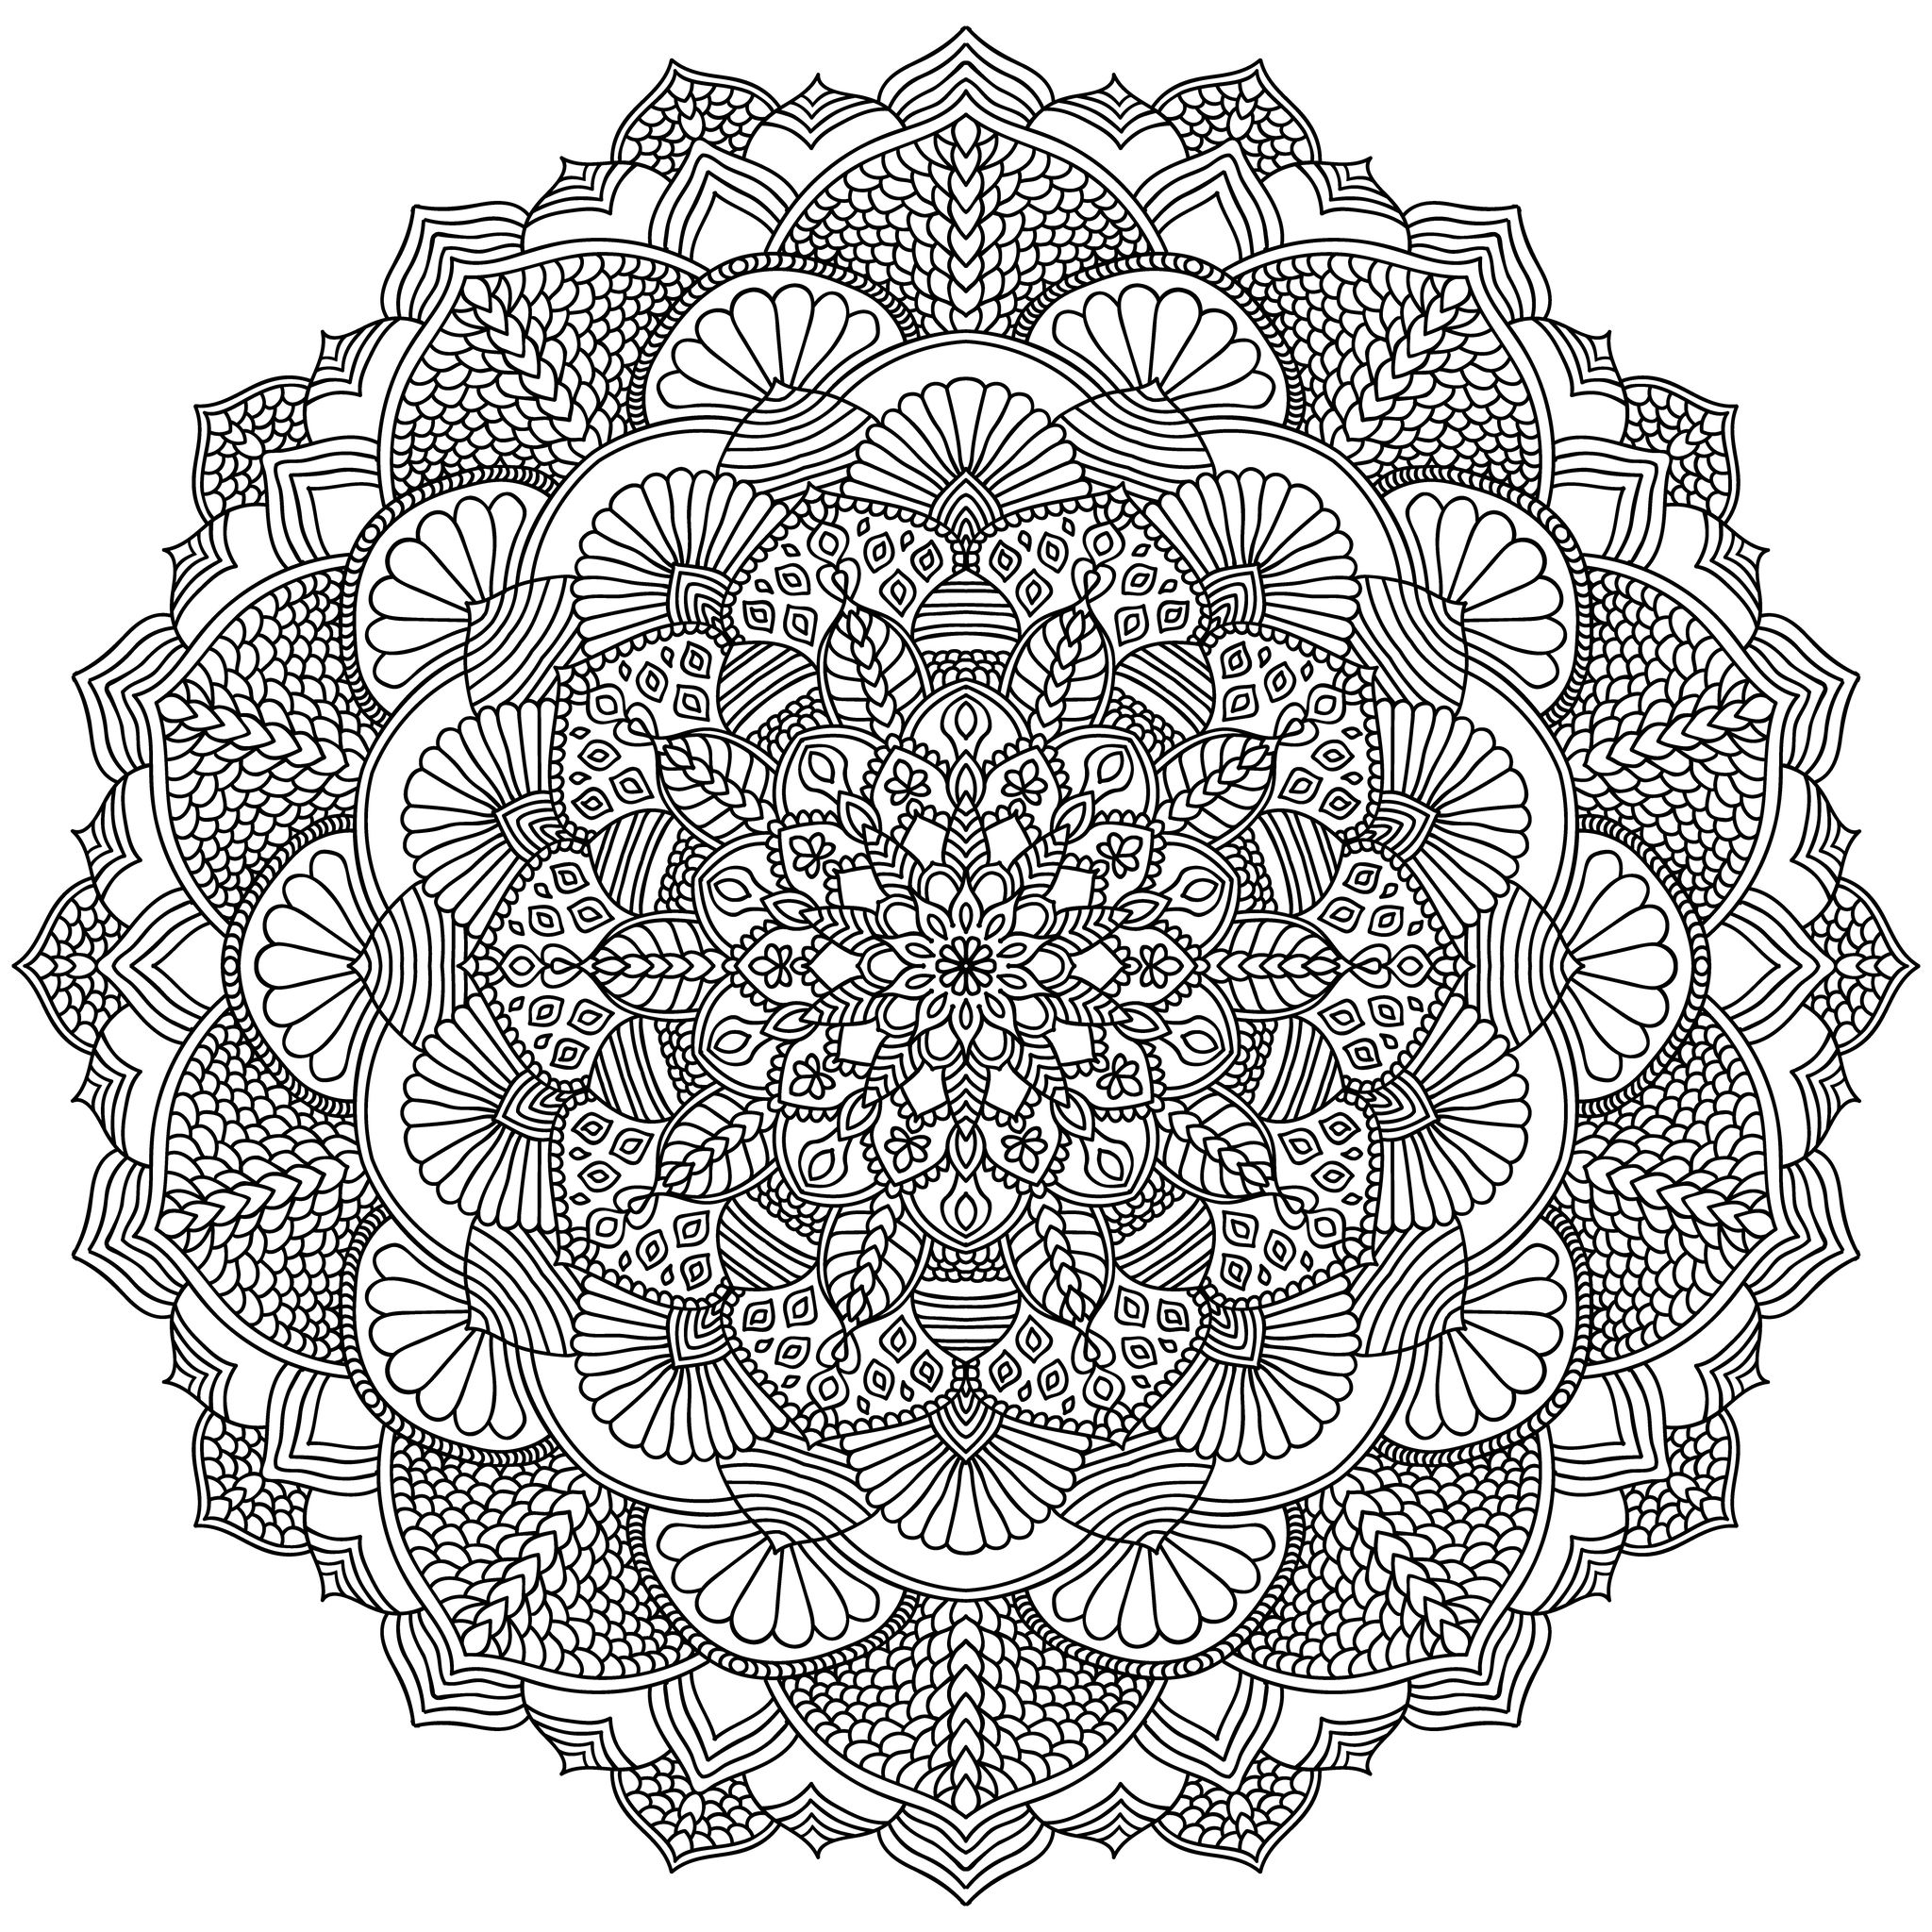 Ne vous laissez pas hypnotiser par ce superbe Mandala composé de formes variées et régulières. A vous d'utiliser les techniques que vous préférez pour le mettre en valeur : feutres, crayons, peinture ...